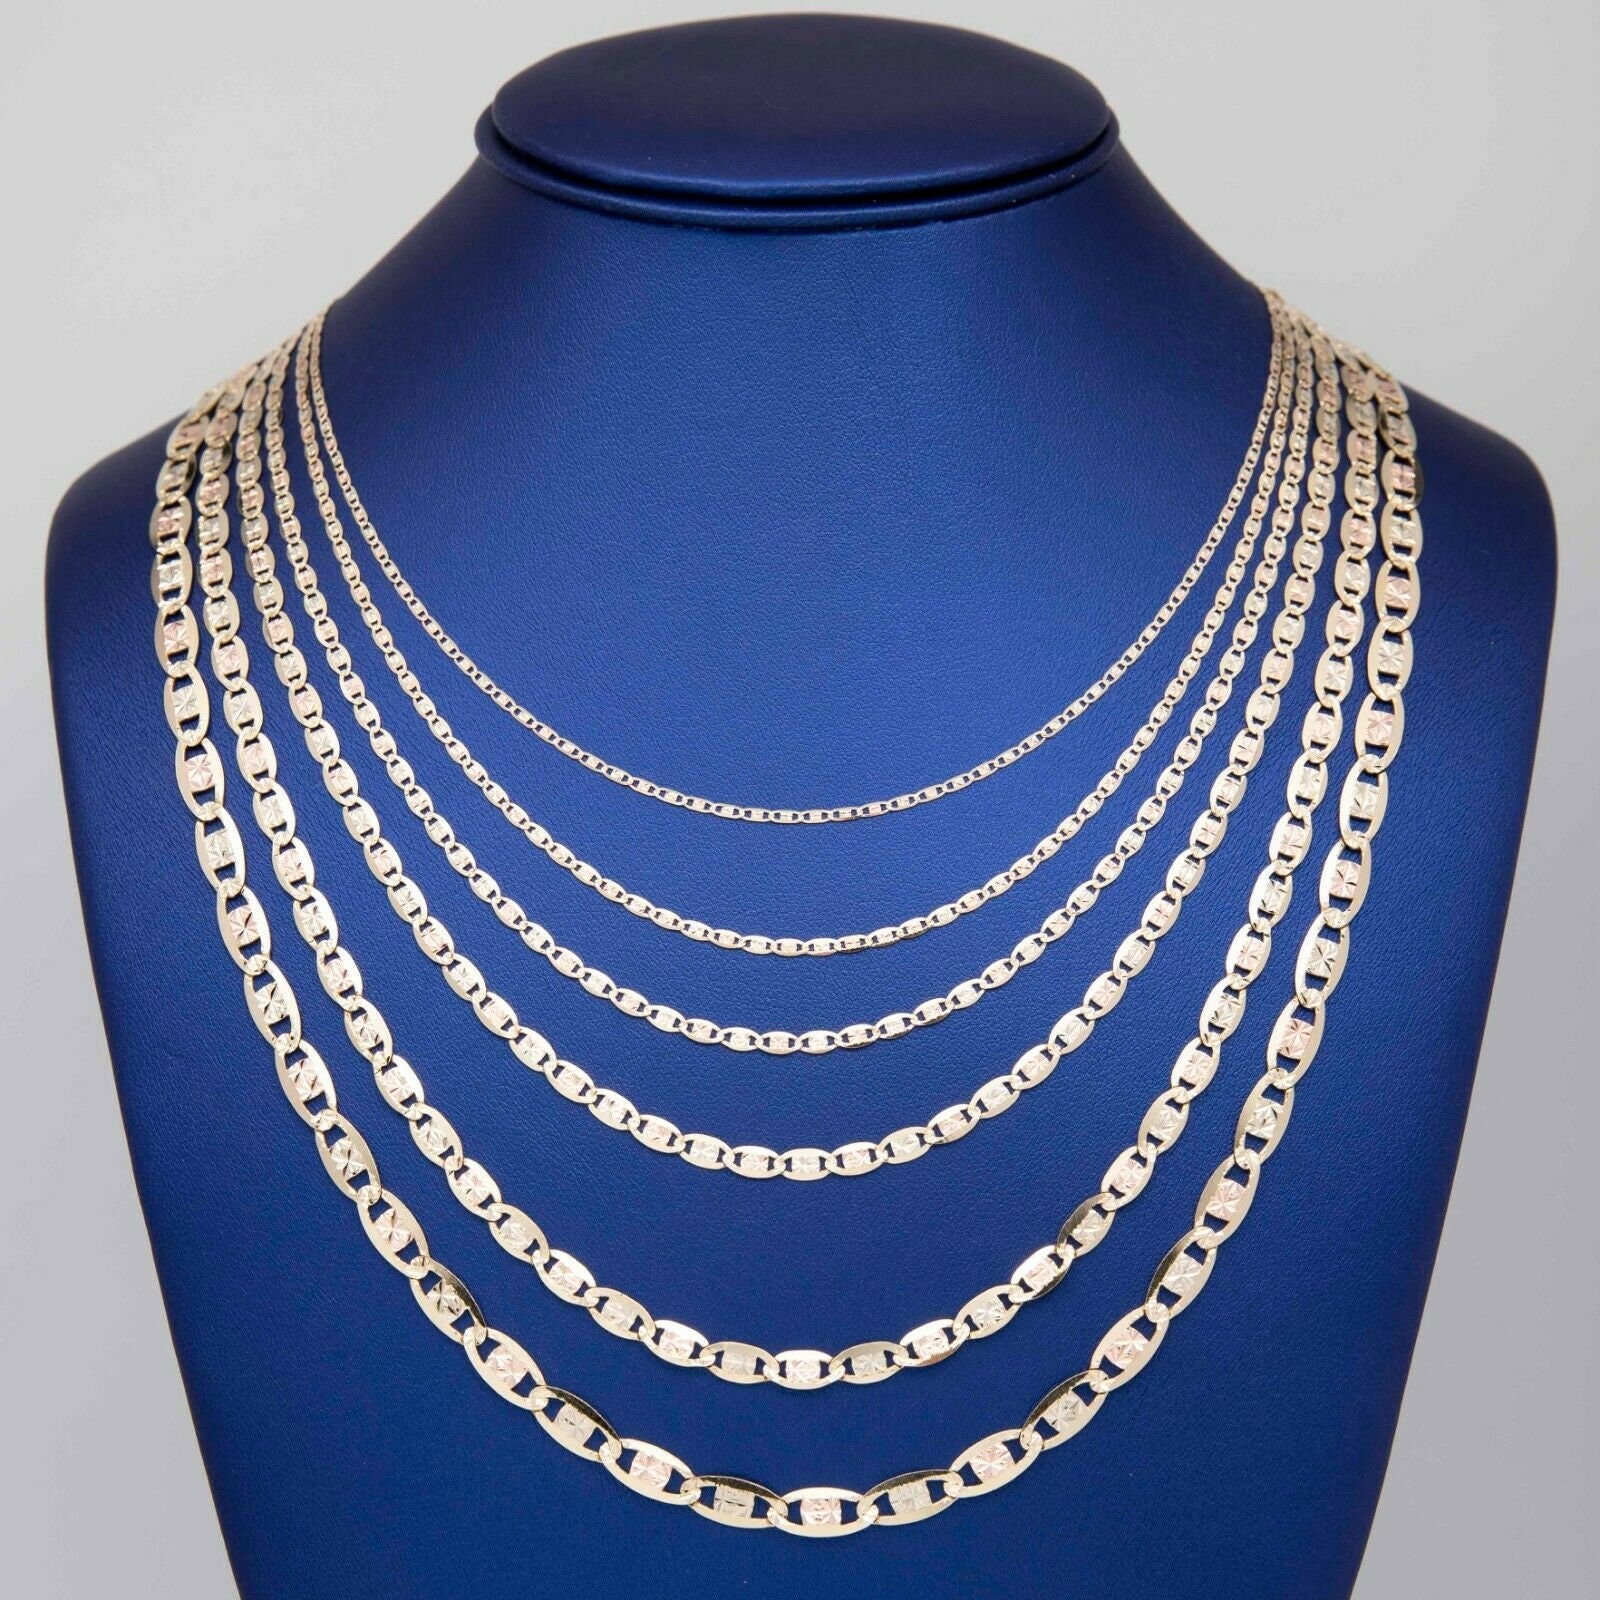 otte Fejde skøn Textured Valentino Link Chain Necklace Real 10K Tri-color Gold - Etsy